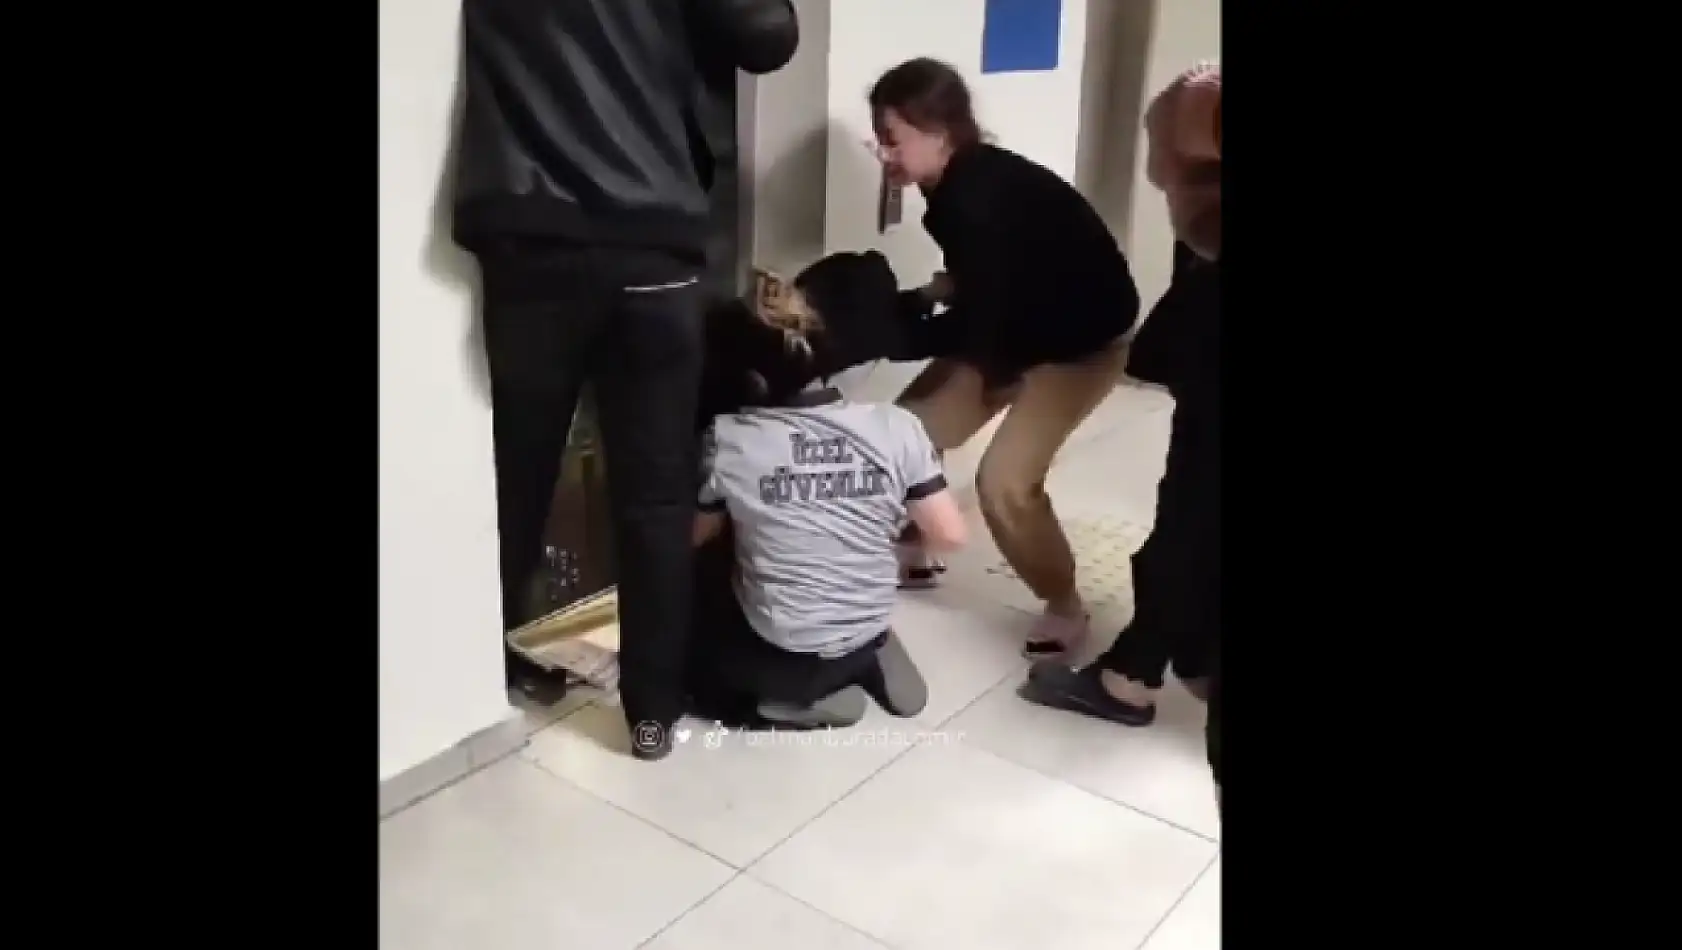 KYK yurtlarında asansör krizi devam ediyor: öğrencilerin içinde olduğu asansör düştü!